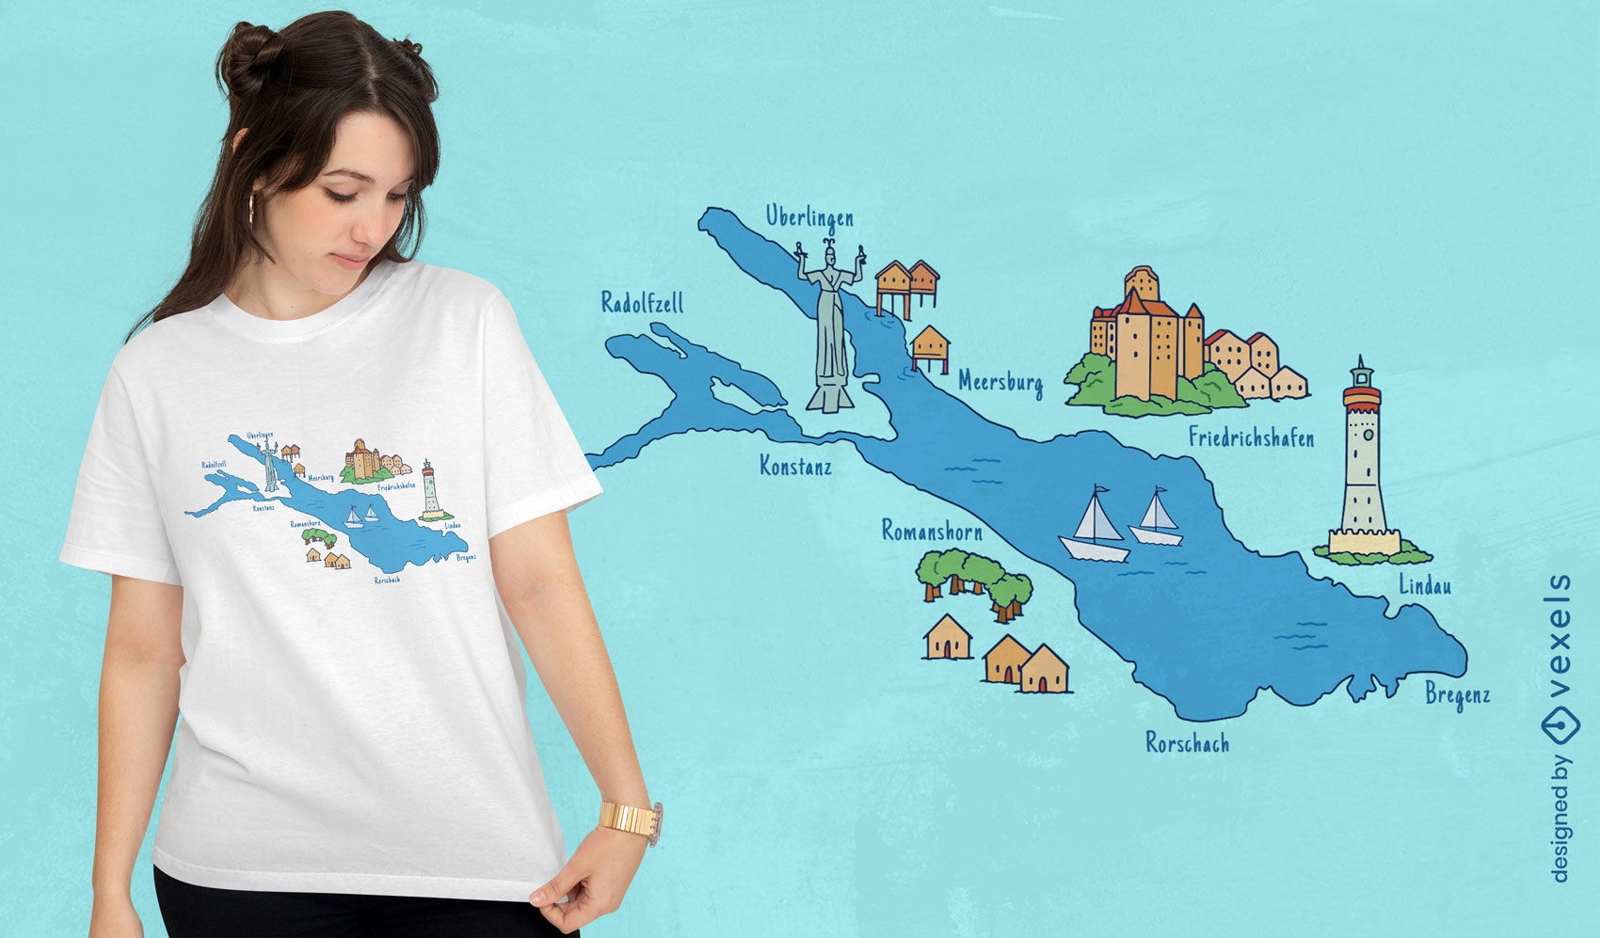 Cities around lake map t-shirt design